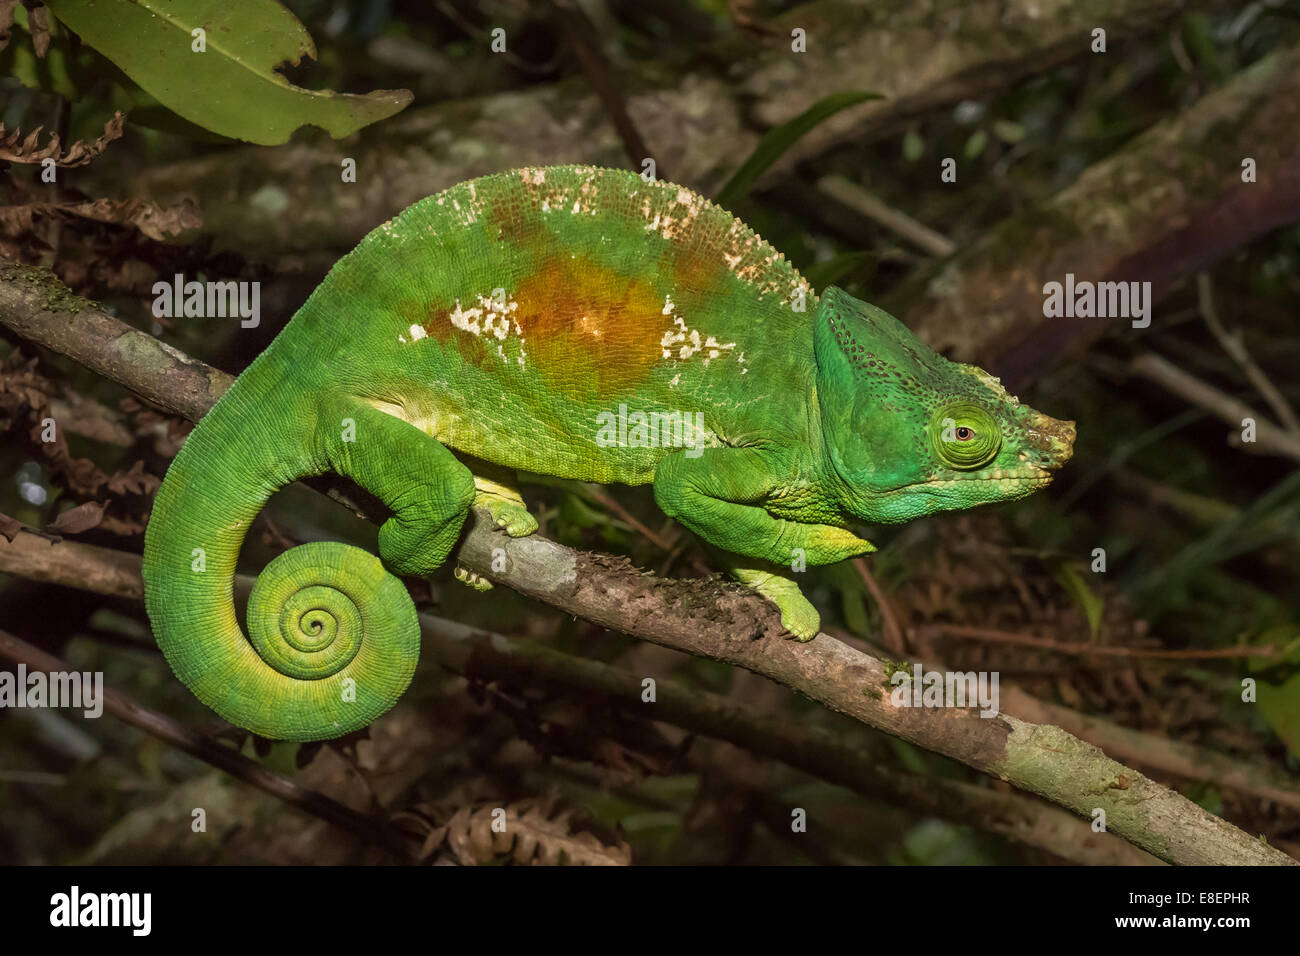 Colorful chameleon of Madagascar Stock Photo